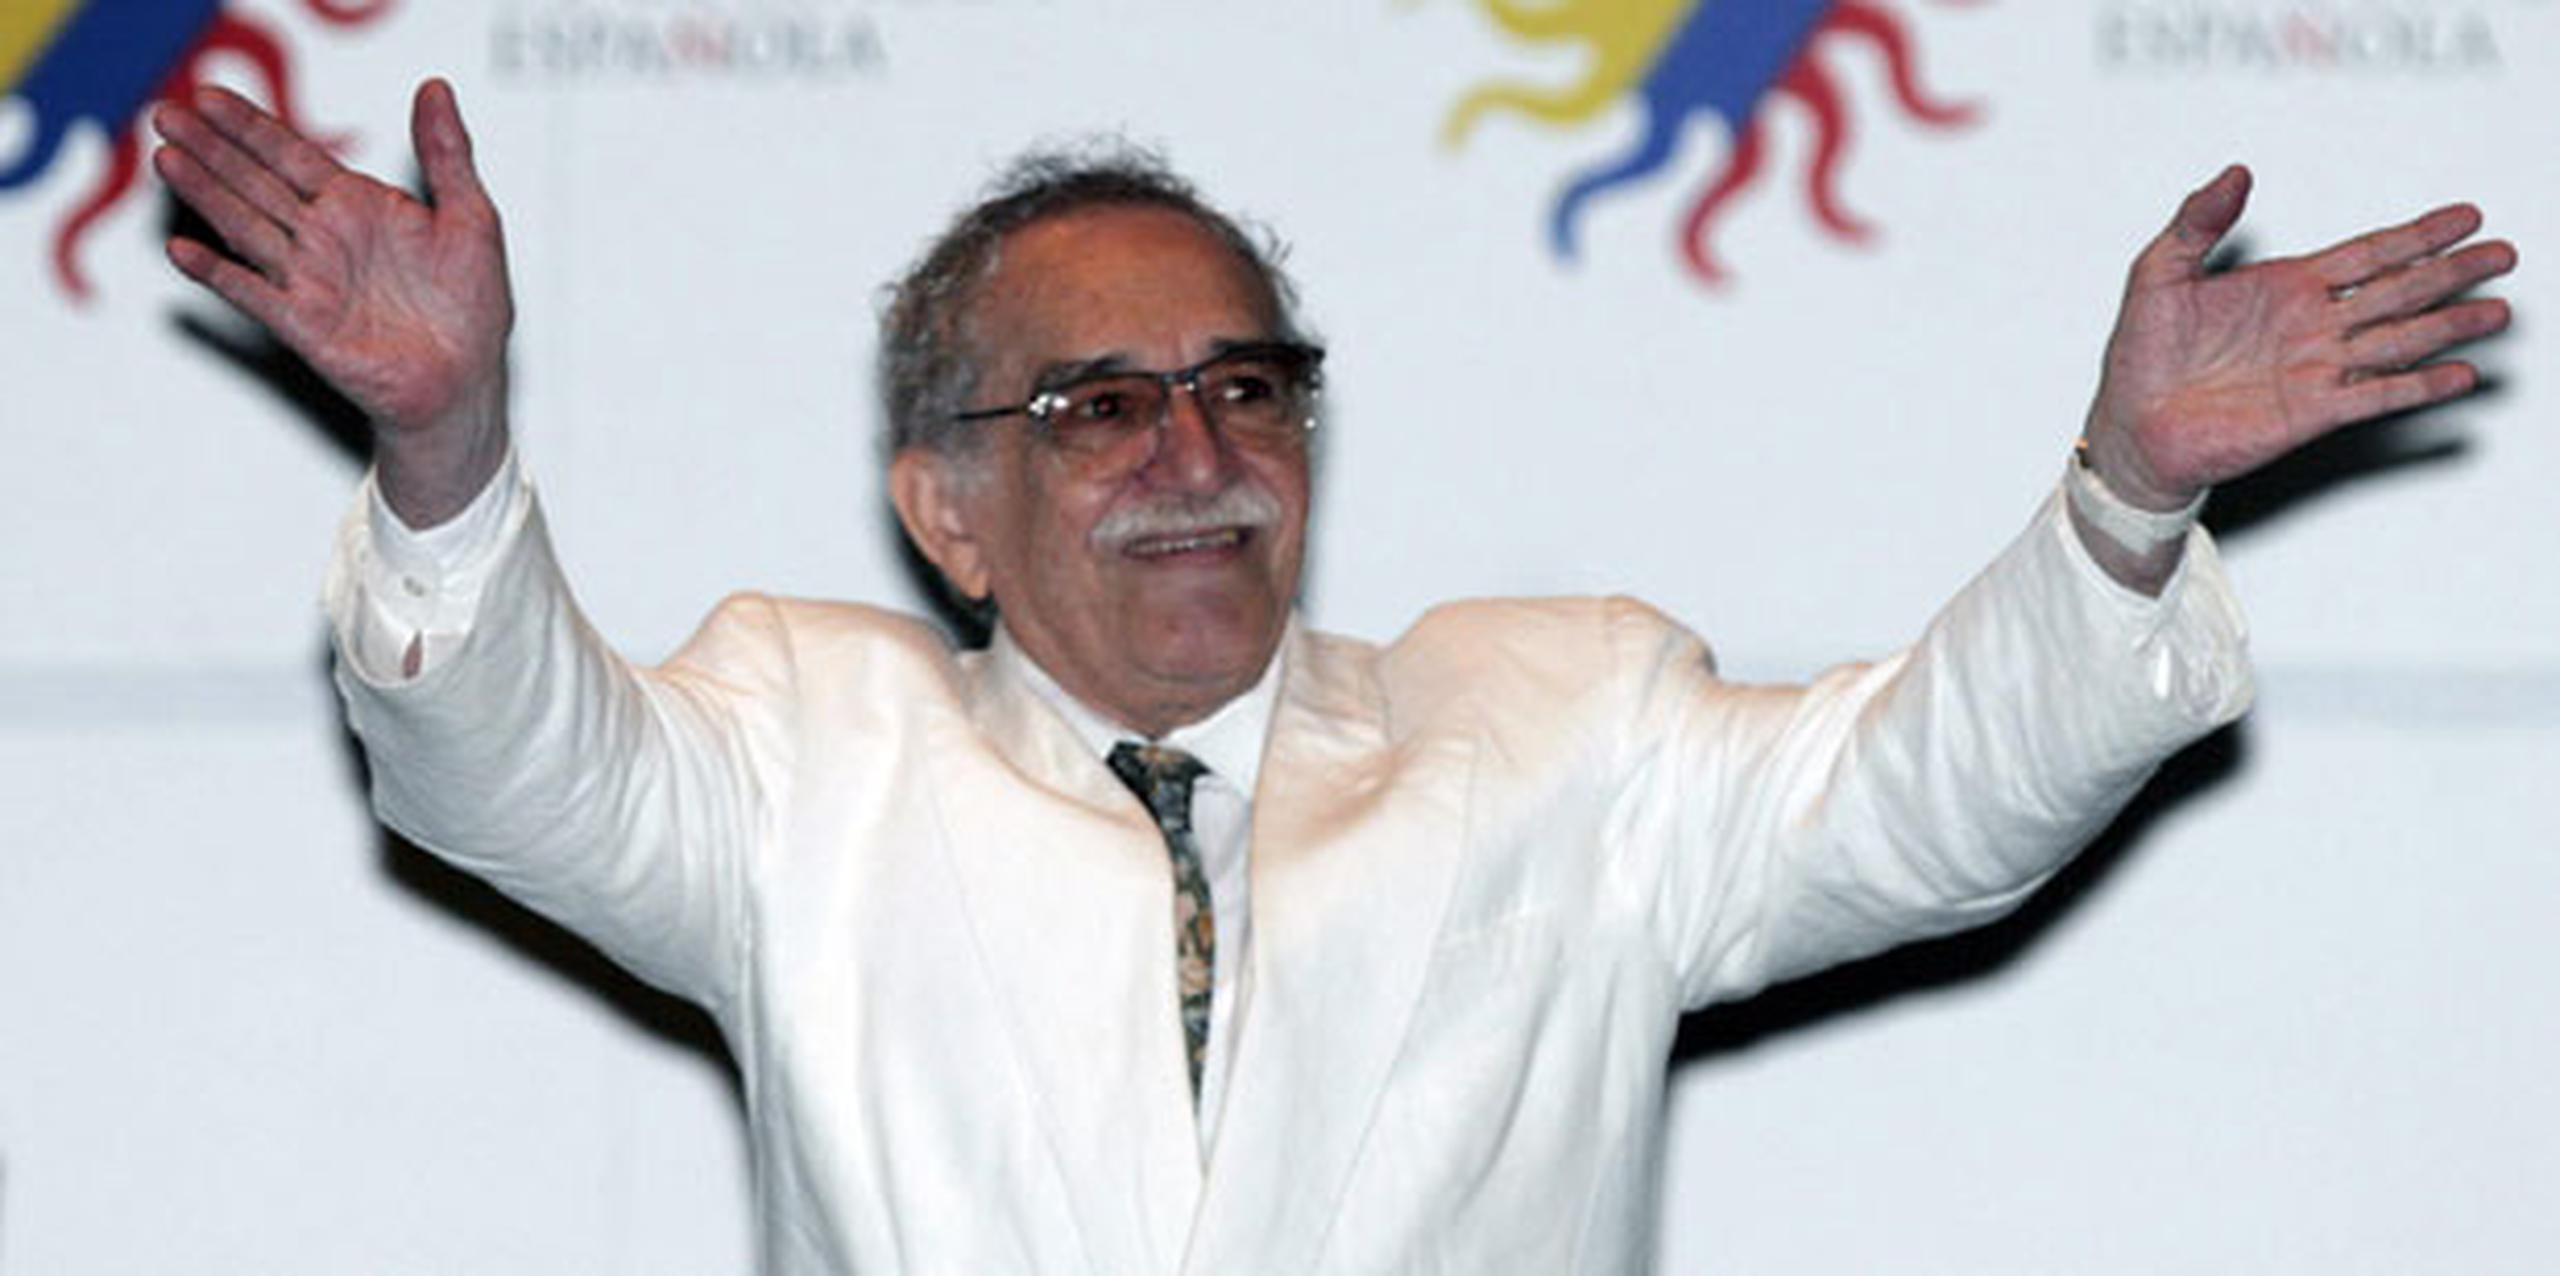 García Márquez, quien ganó el Nobel de Literatura en 1982, murió el 17 de abril de 2014 en México. (Archivo)